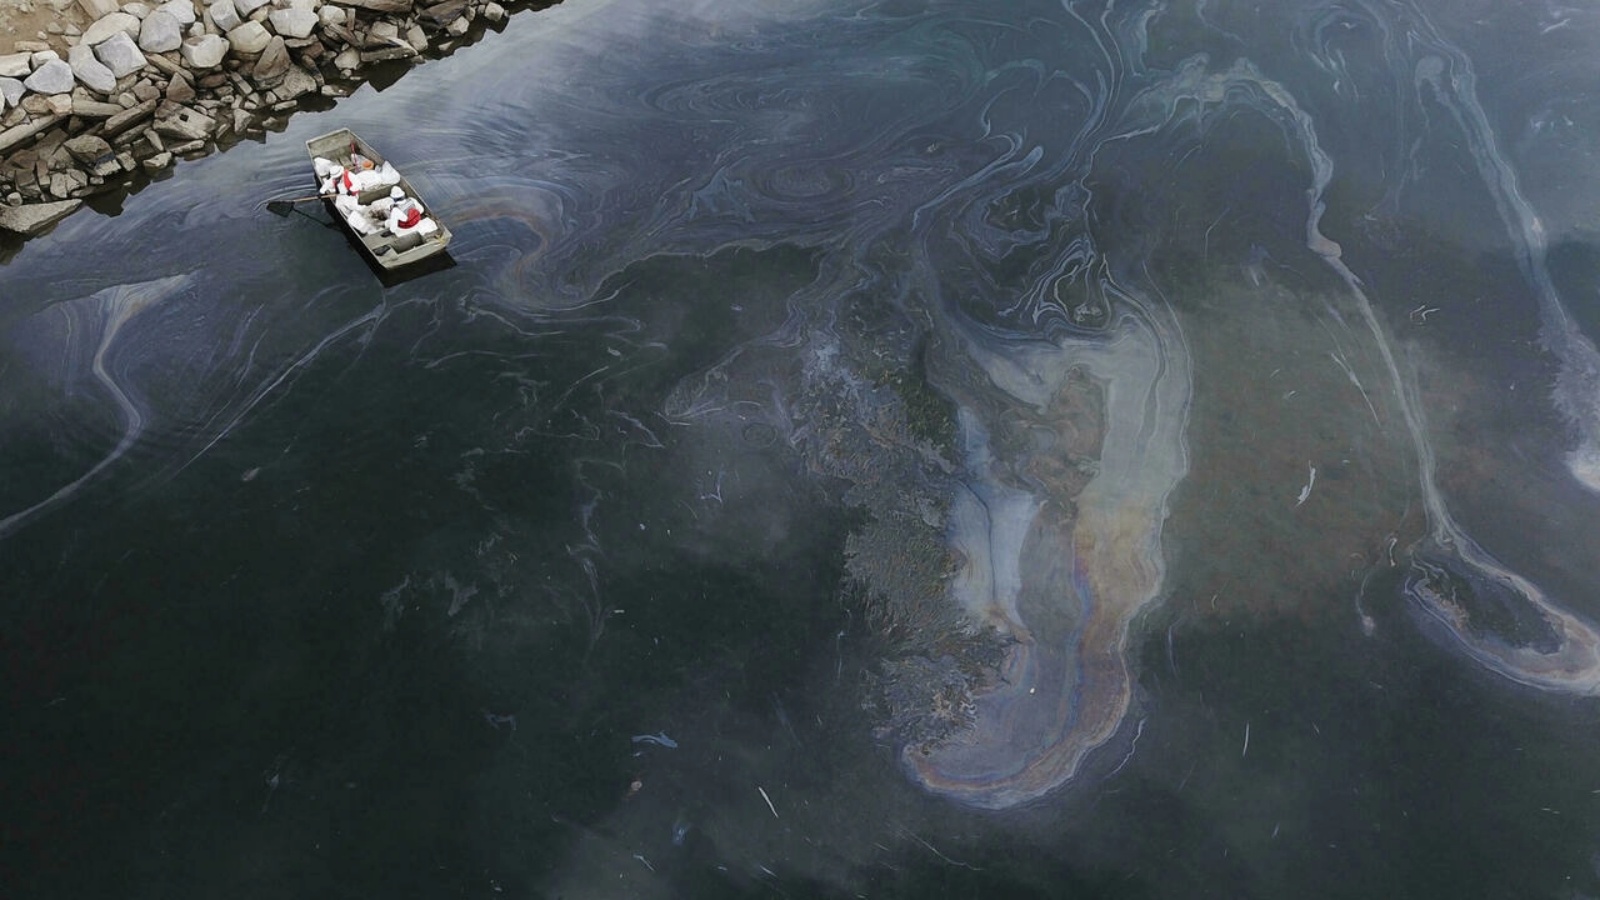 طواقم الاستجابة البيئية تقوم بتنظيف النفط بالقرب من مصب نهر تالبرت مارش وسانتا آنا.